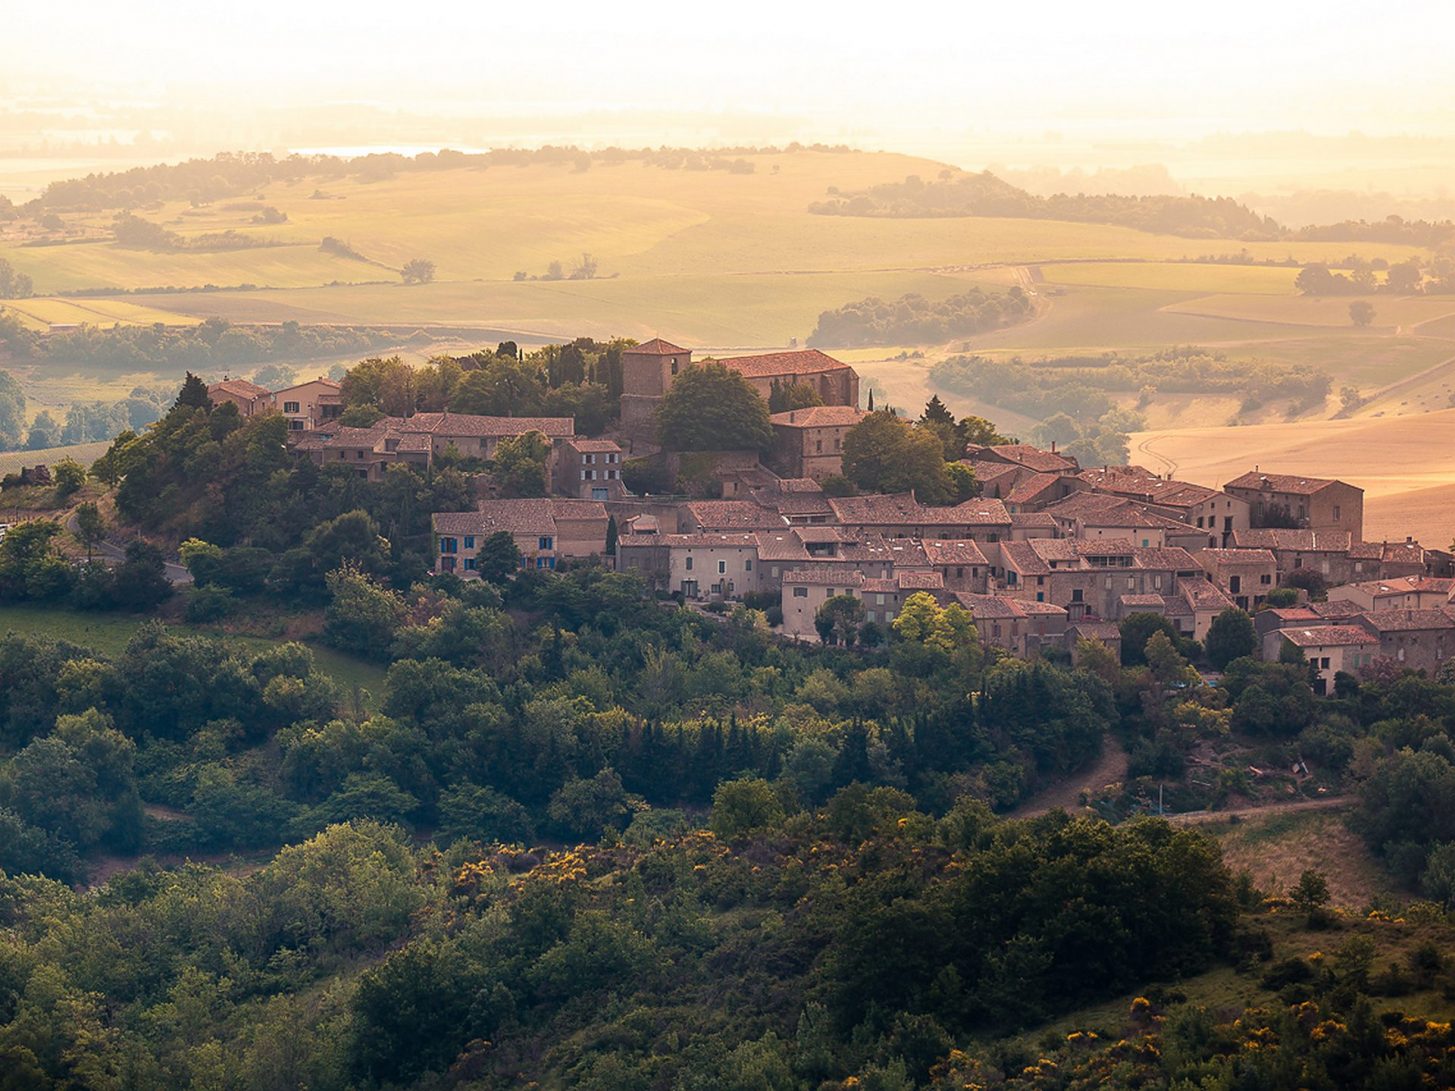 Le village médiéval de Laurac dans la Piège©Vincent Photographie, Pays lauragais, Office de Tourisme Collines cathares